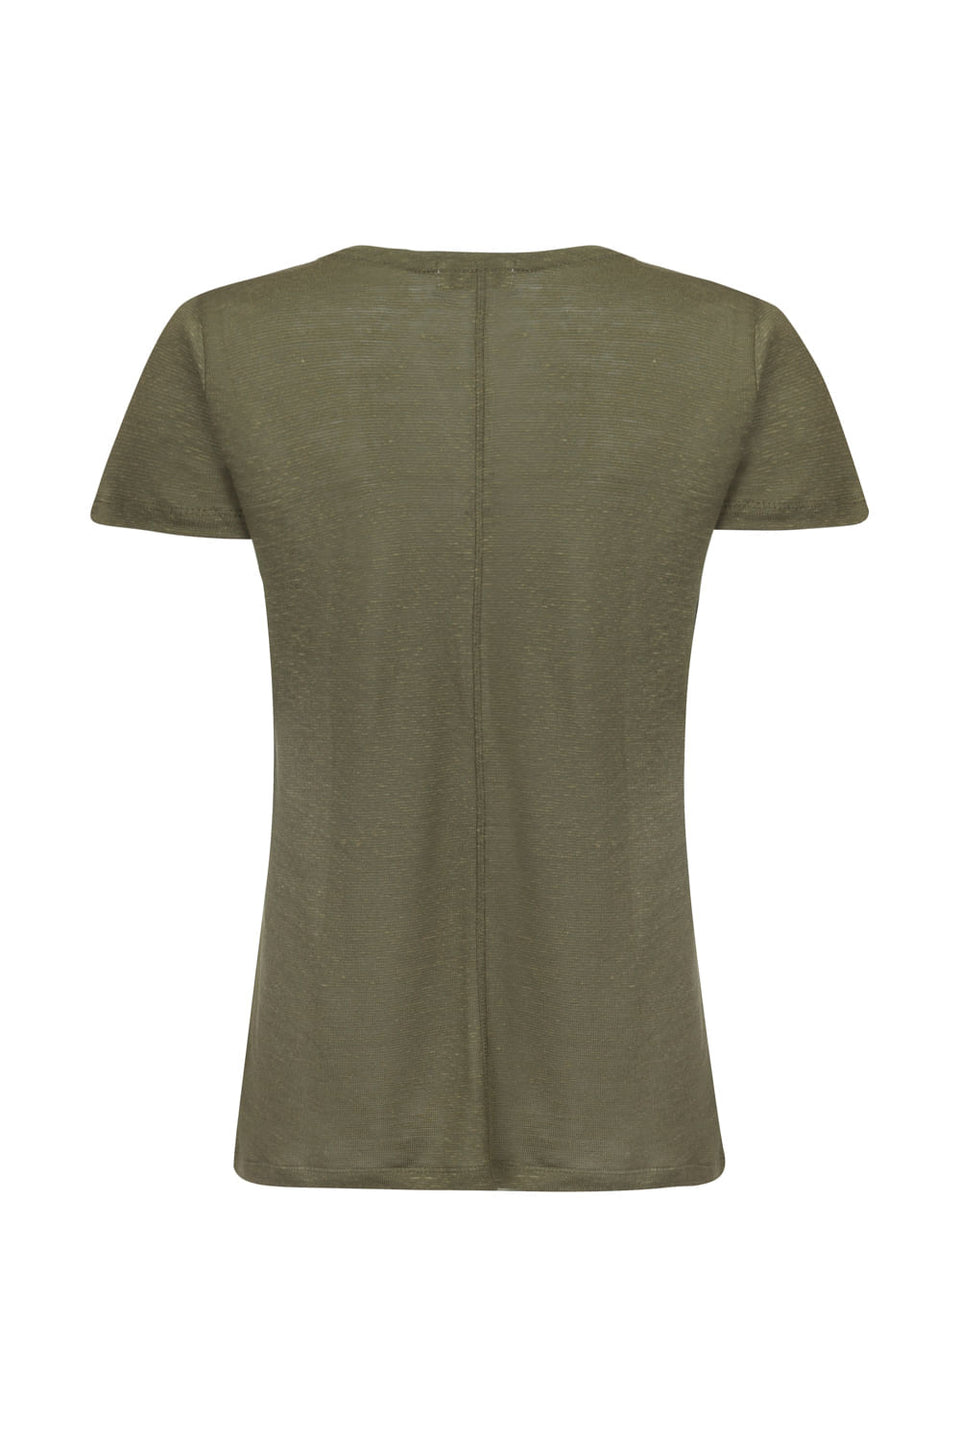 Camiseta Mullet Basic Verde